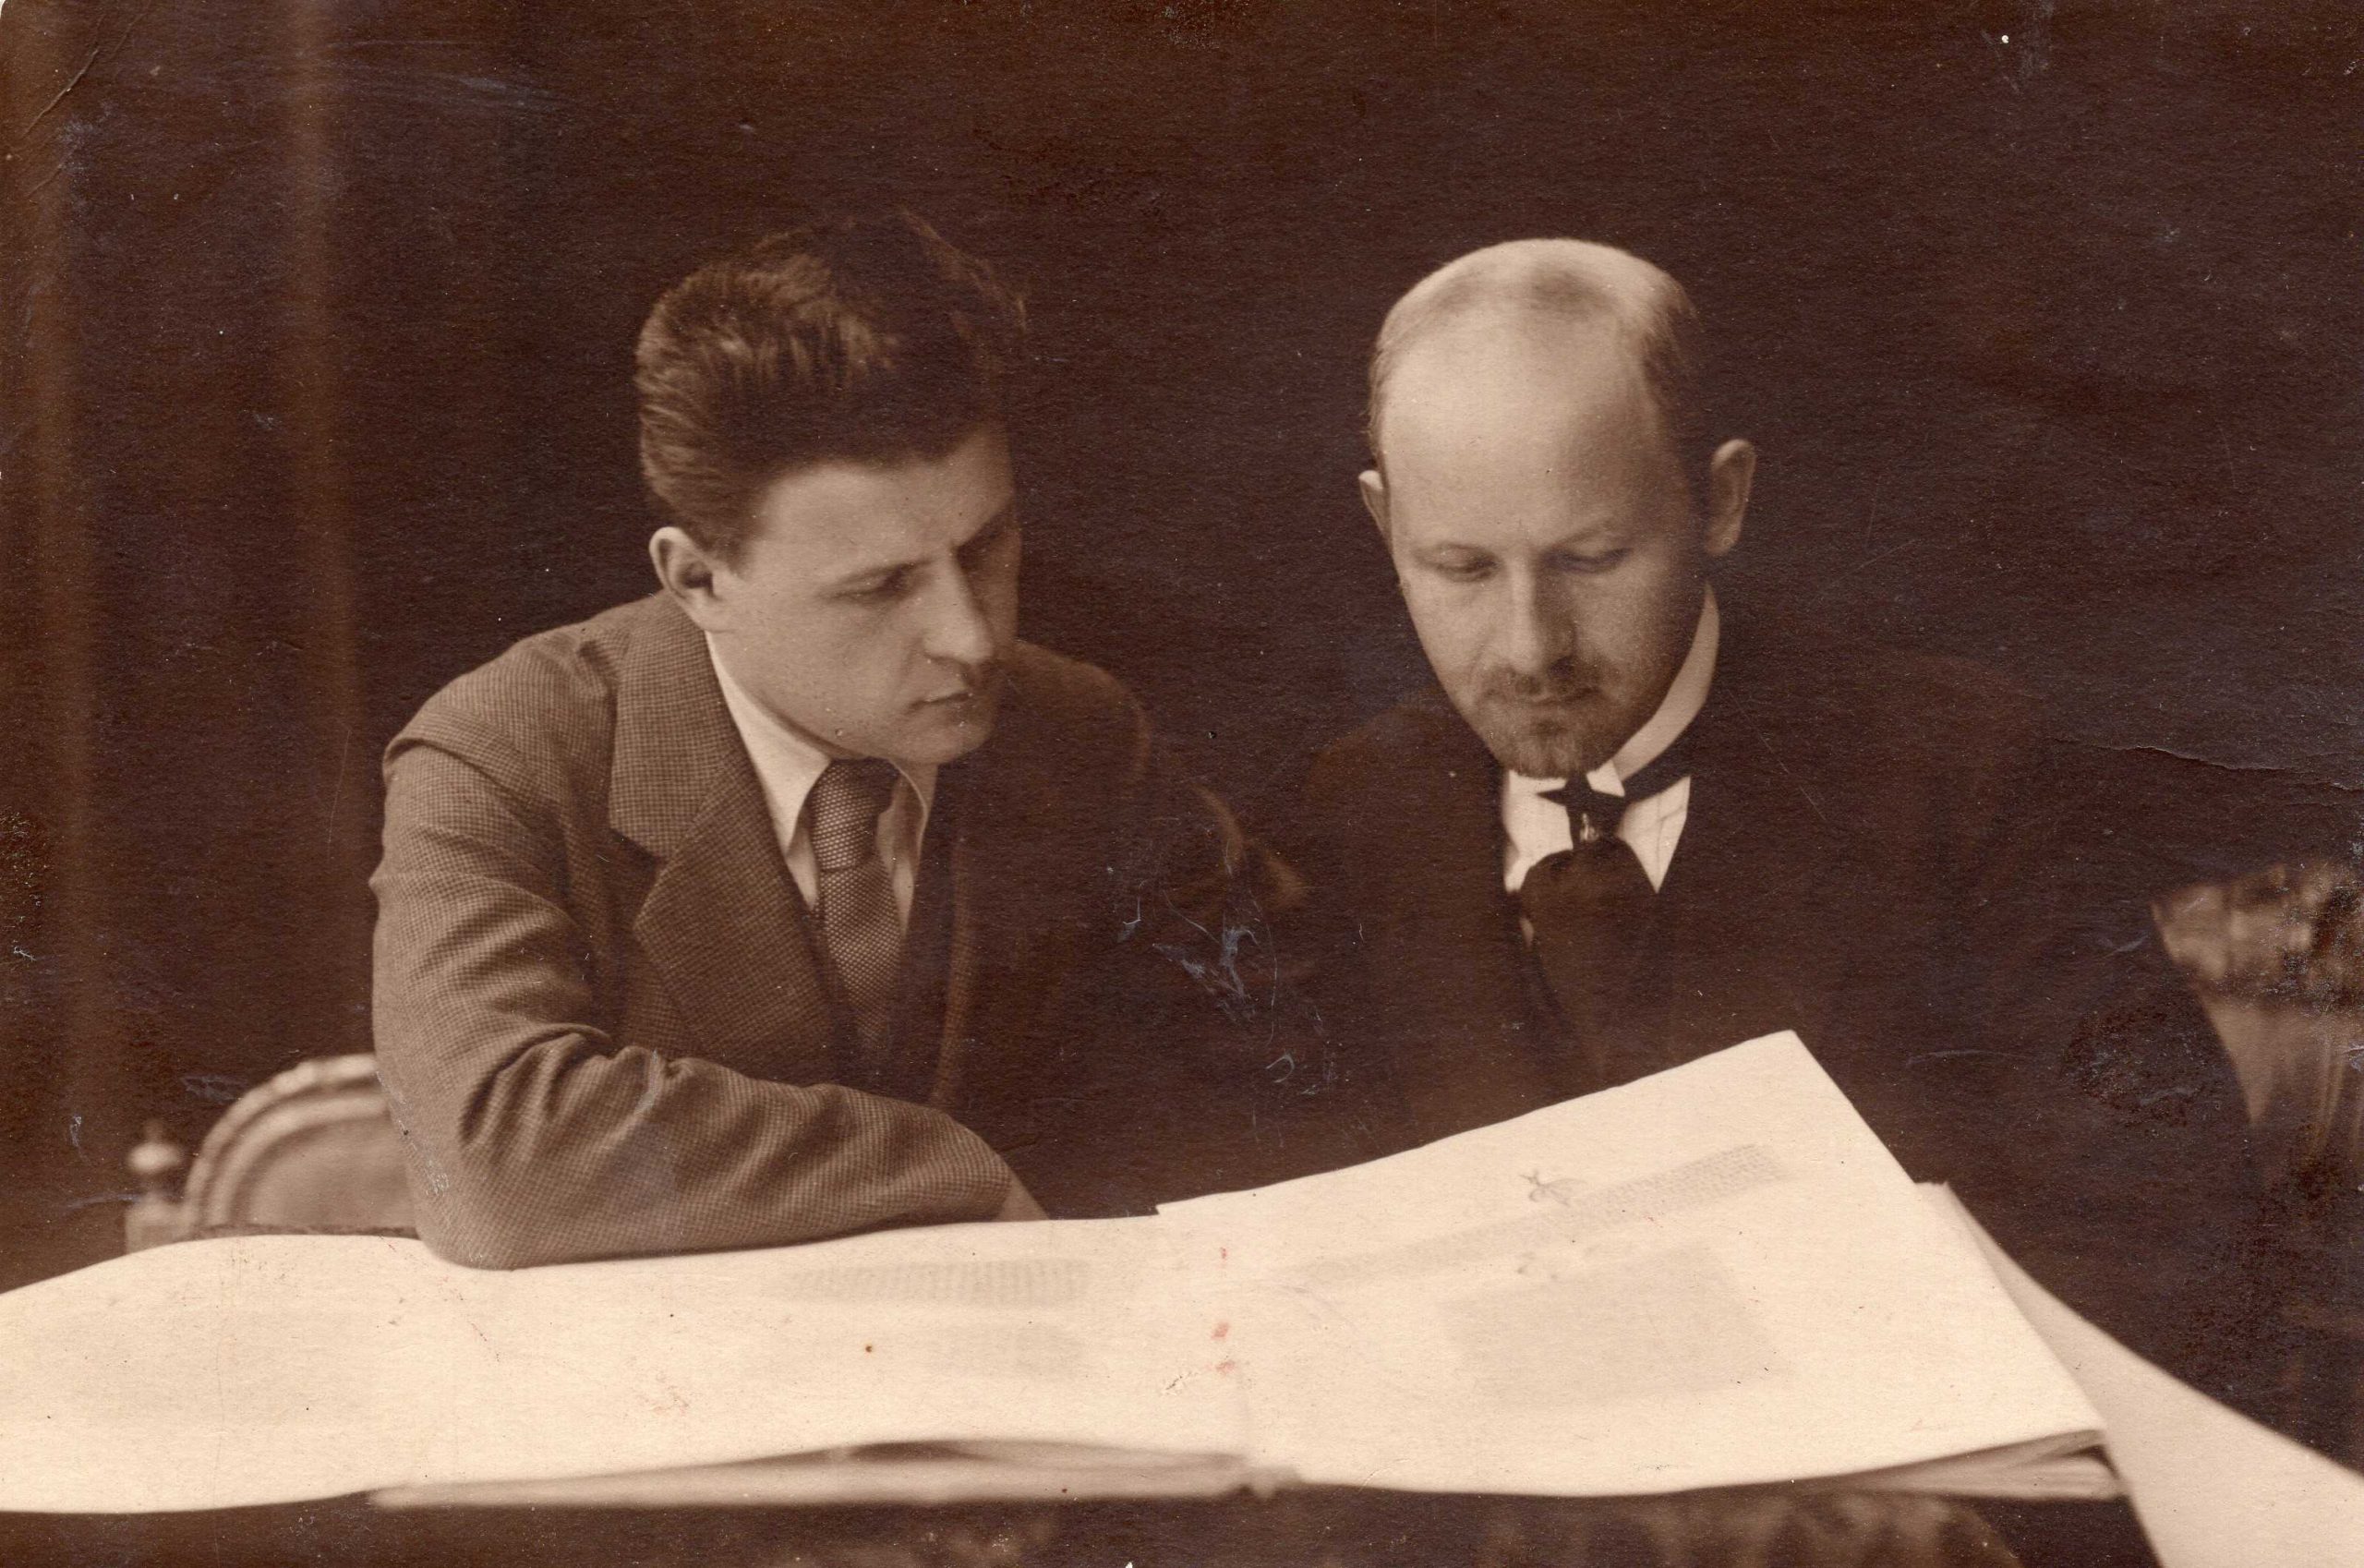 M. Lastauskienės vyras Vaclovas Lastauskas (dešinėje) su draugu Cvirkevičiumi. Vilnius. Apie 1922 m. MLLM P27500